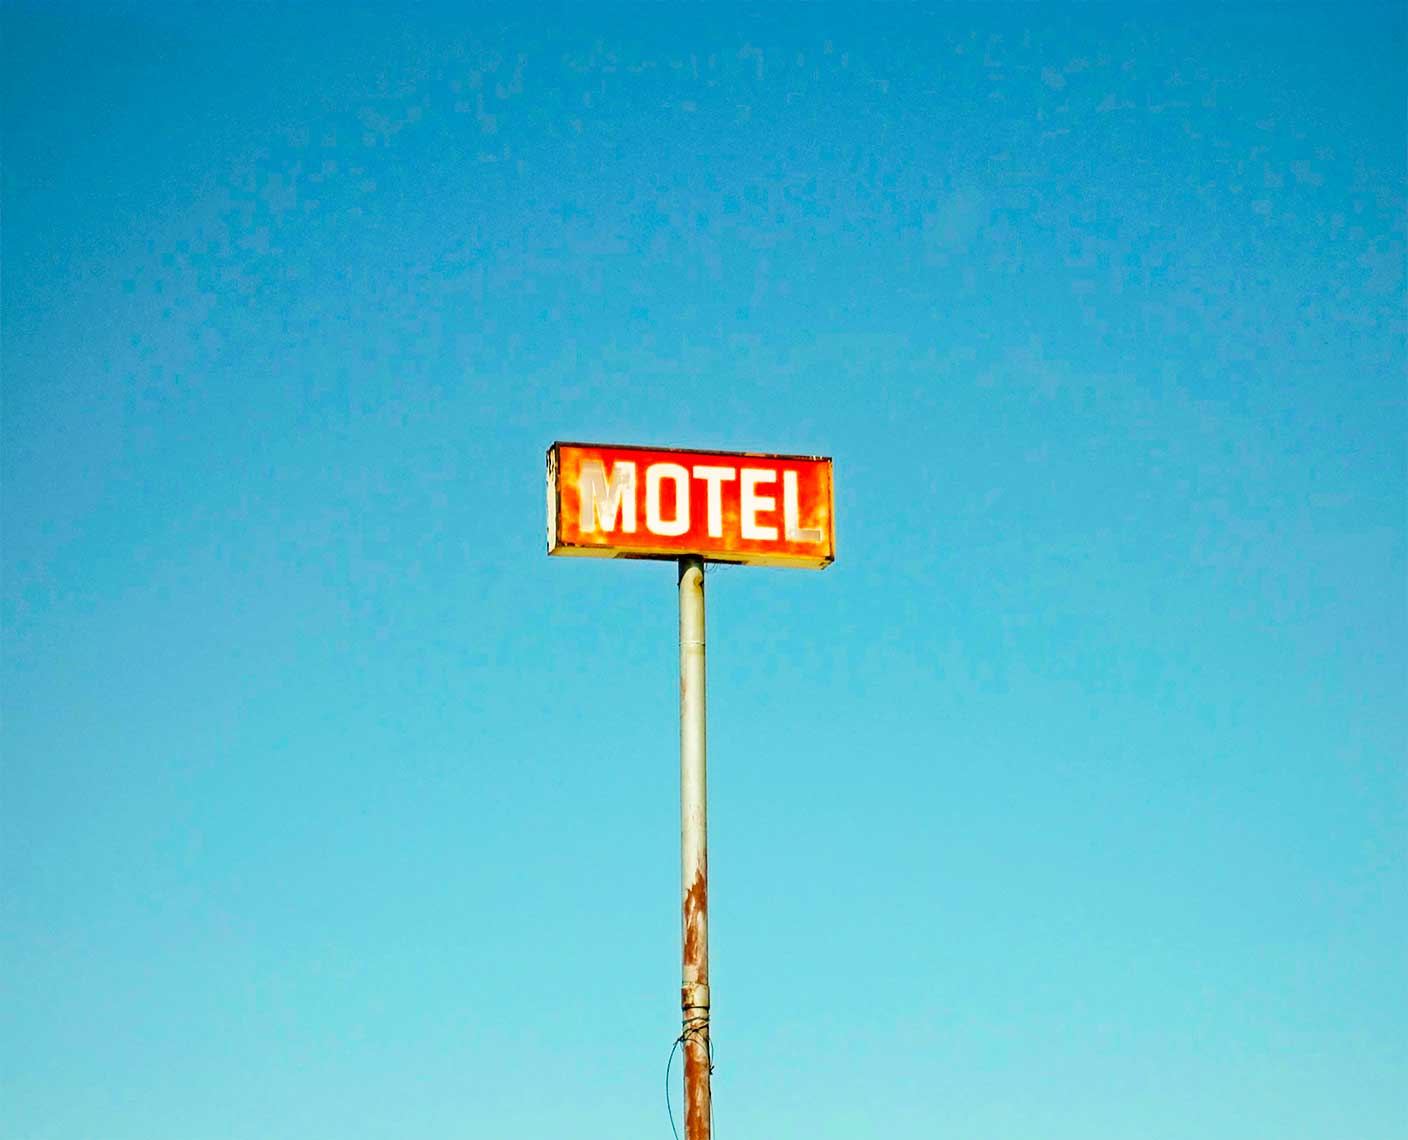 Placa indicativa de motel.